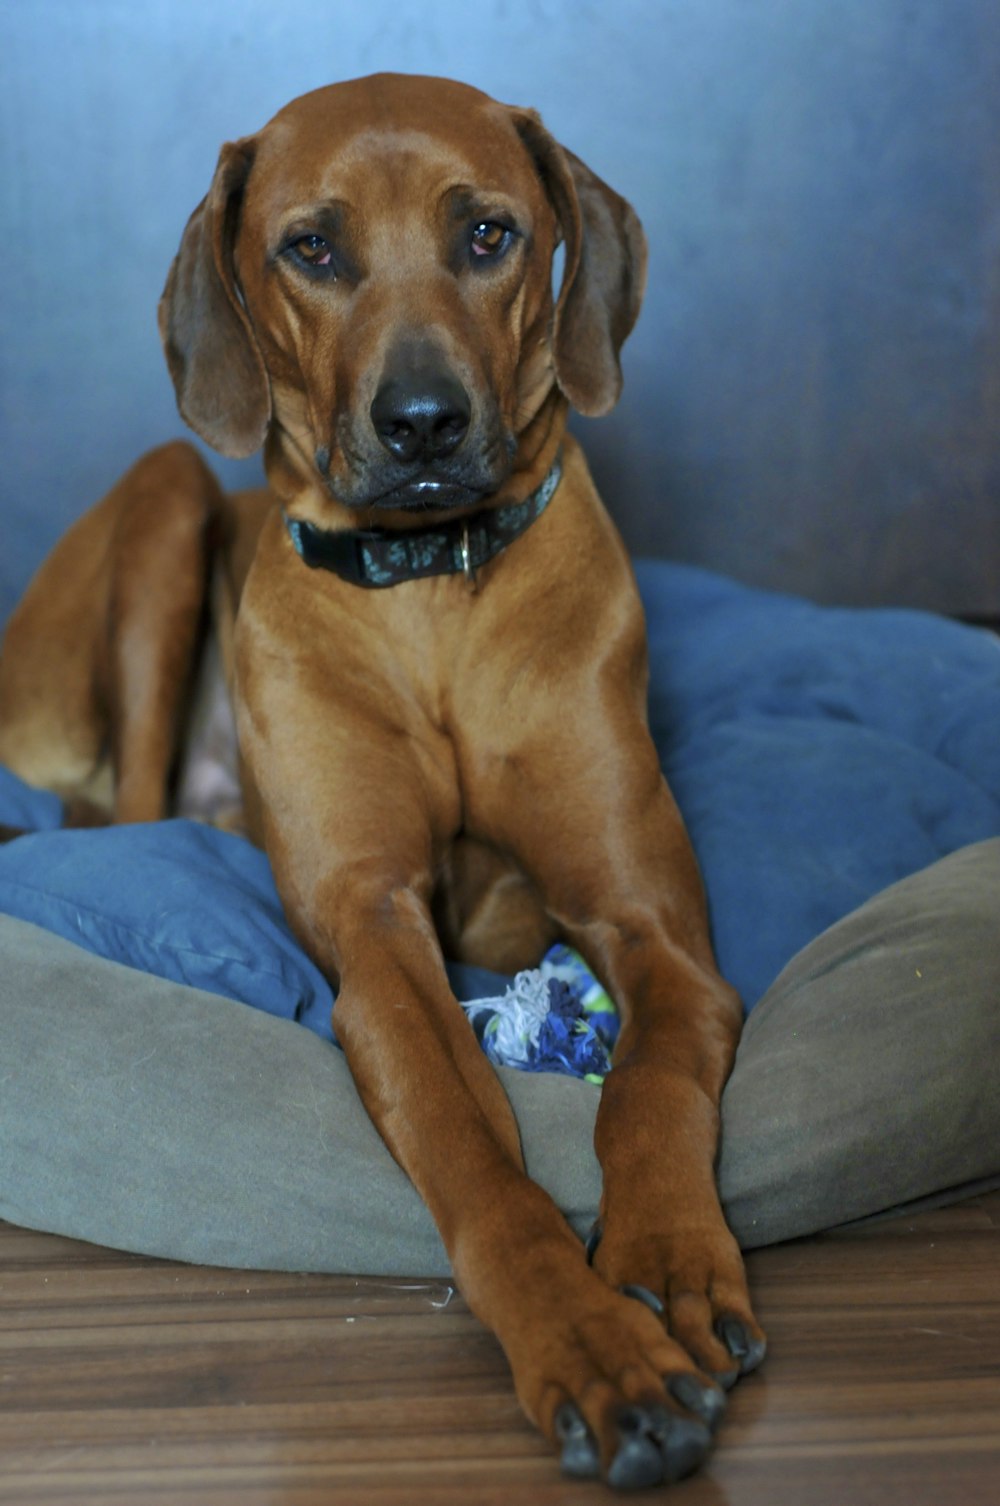 brown short coated dog on blue textile